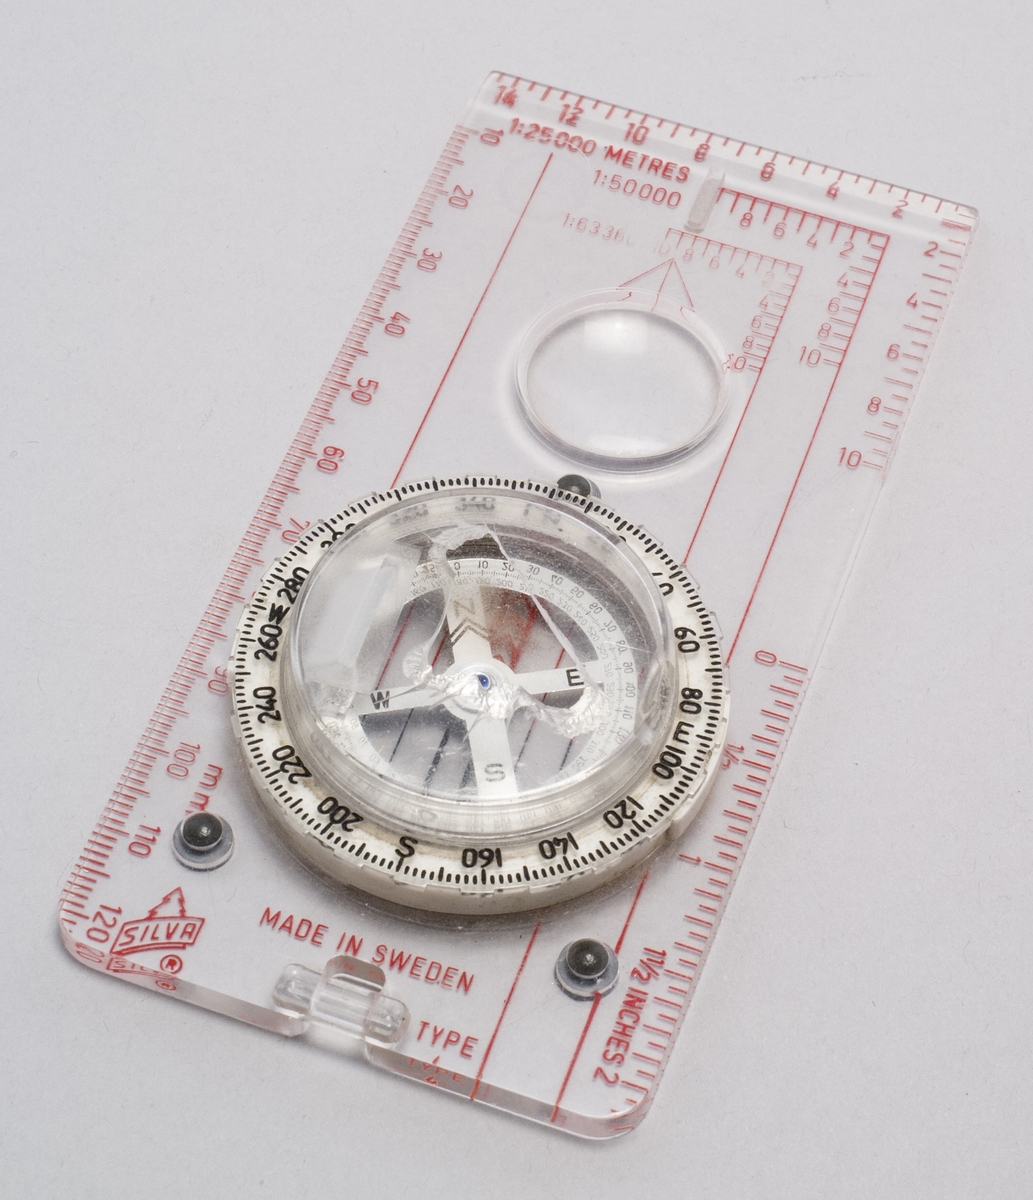 Kompass av typ 4, med lins och spegel för avläsning.  Text bifogad föremålet: "Med hål av isbjörnsklo under expeditionen på Grönland 2004 / Göran"